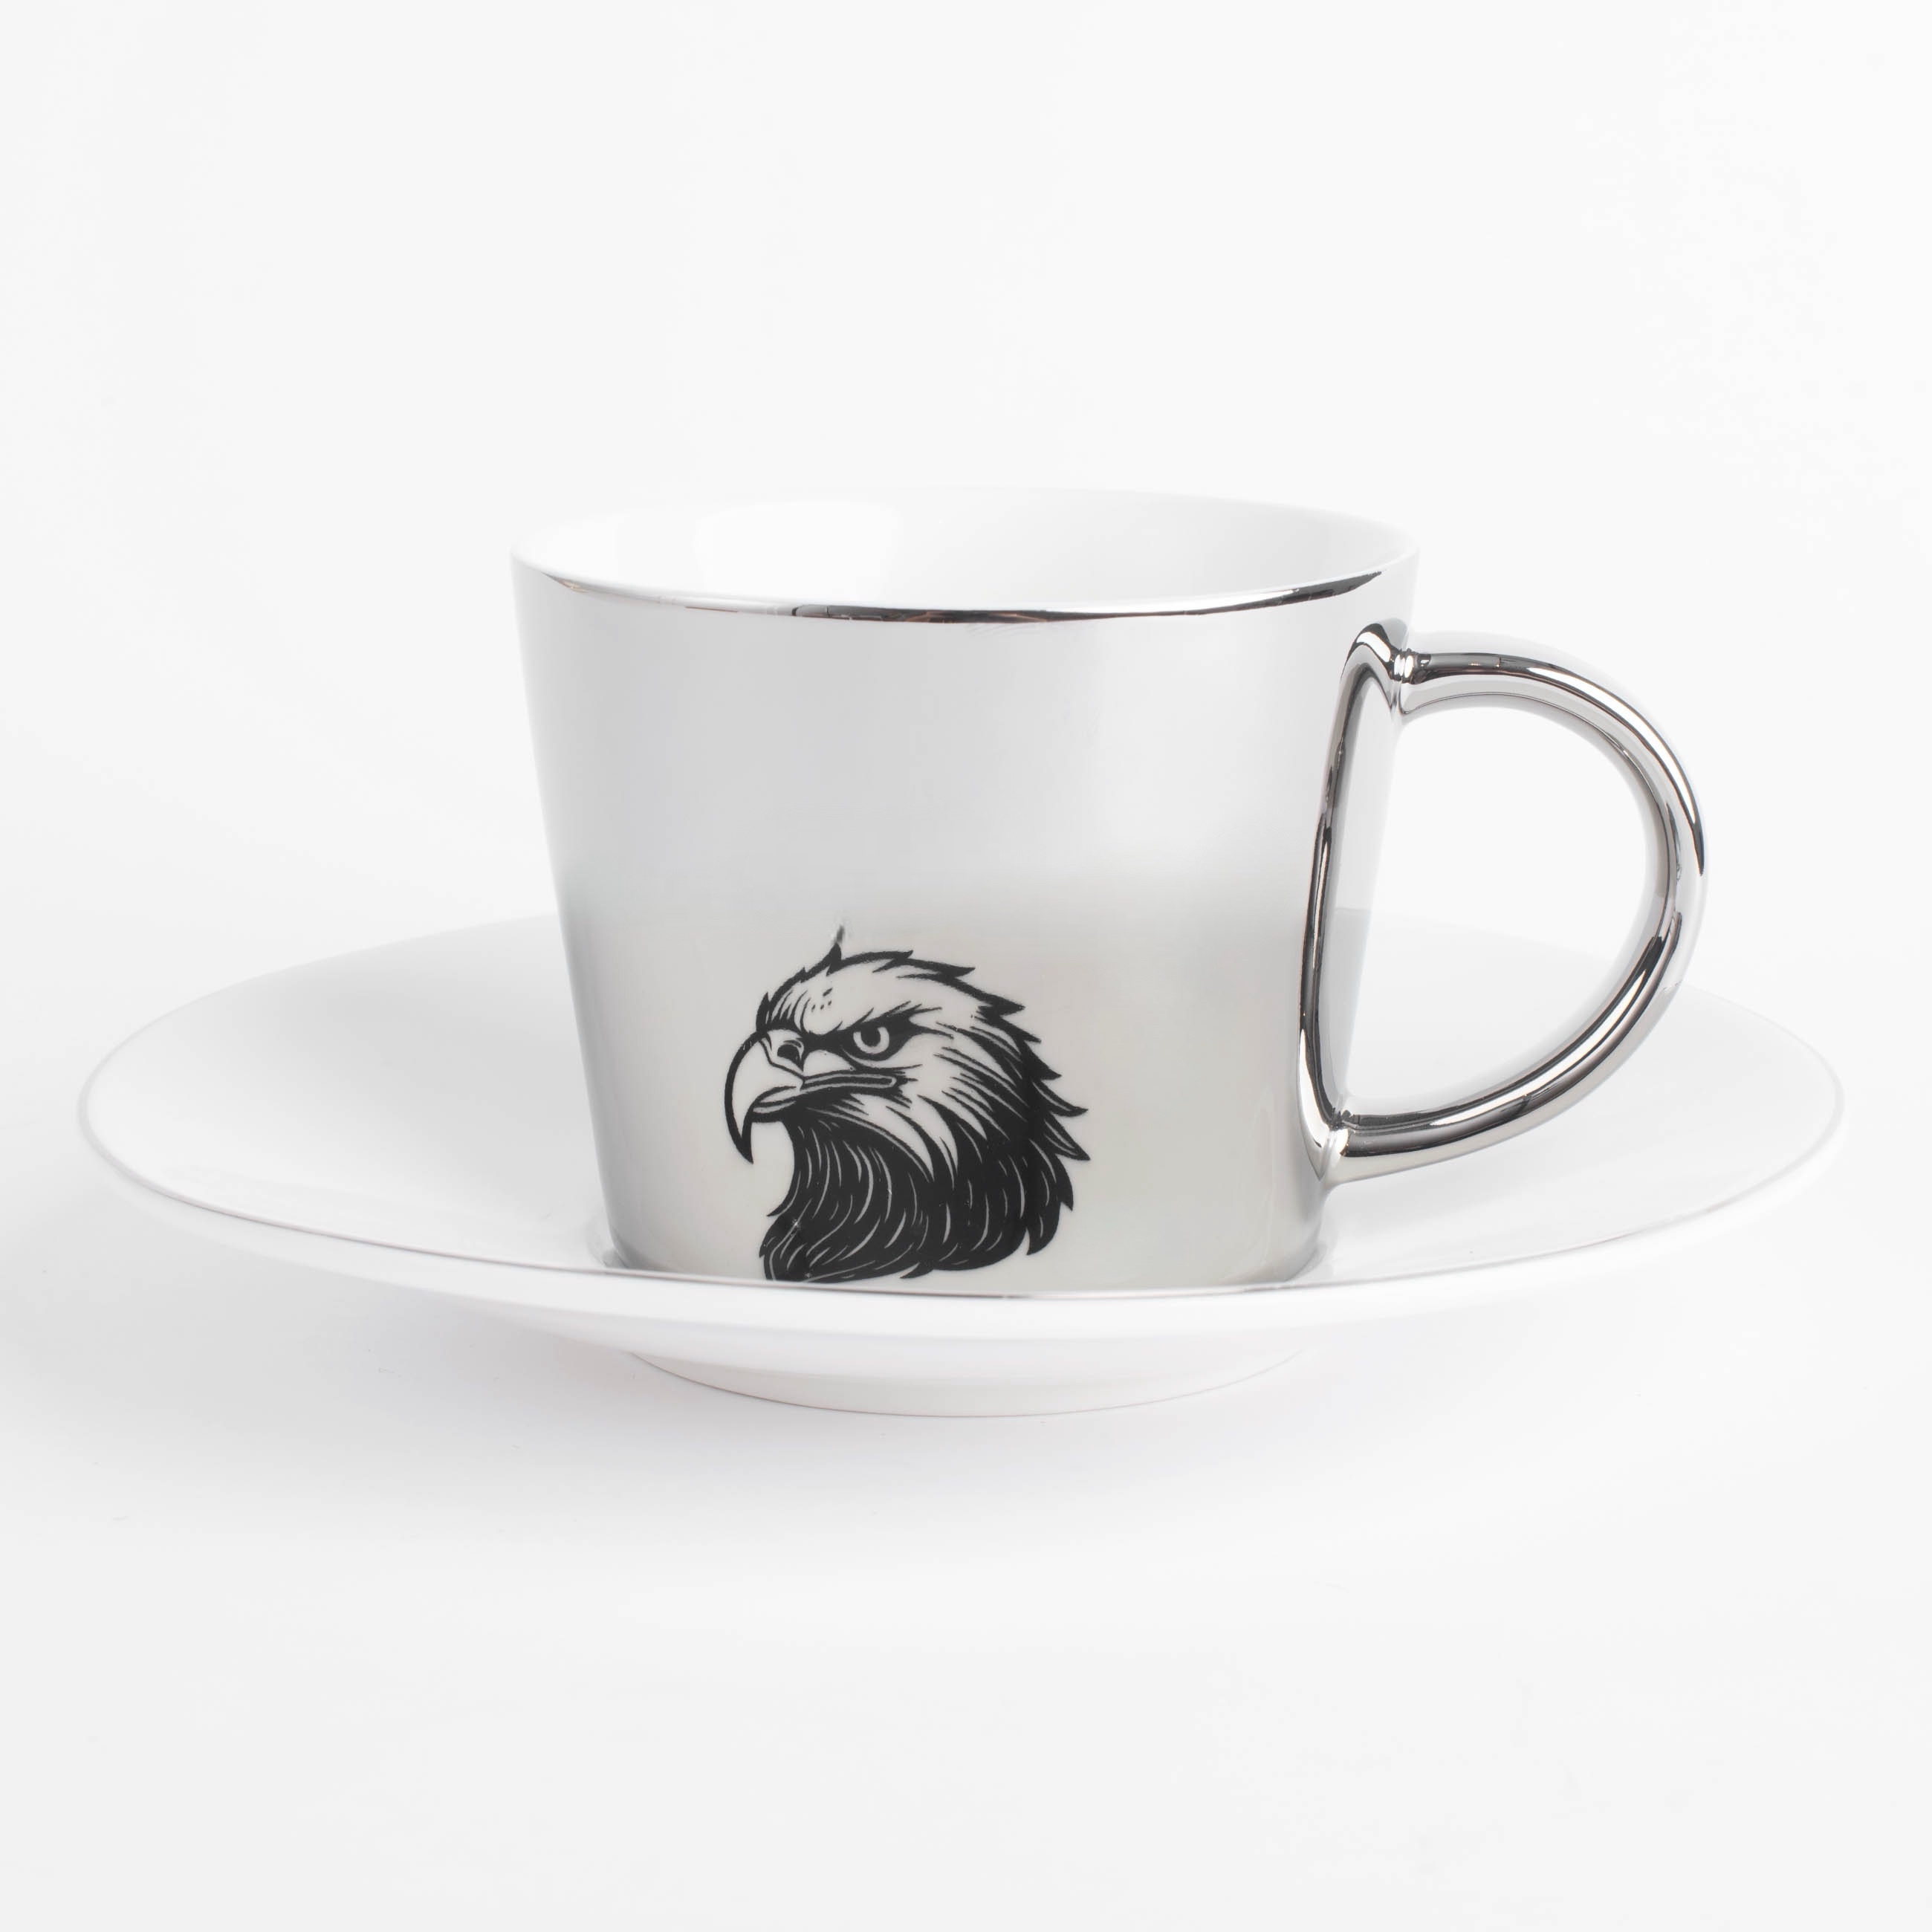 Пара чайная, 1 перс, 2 пр, 230 мл, фарфор P, бело-серебристая, Орел, Eagle изображение № 4